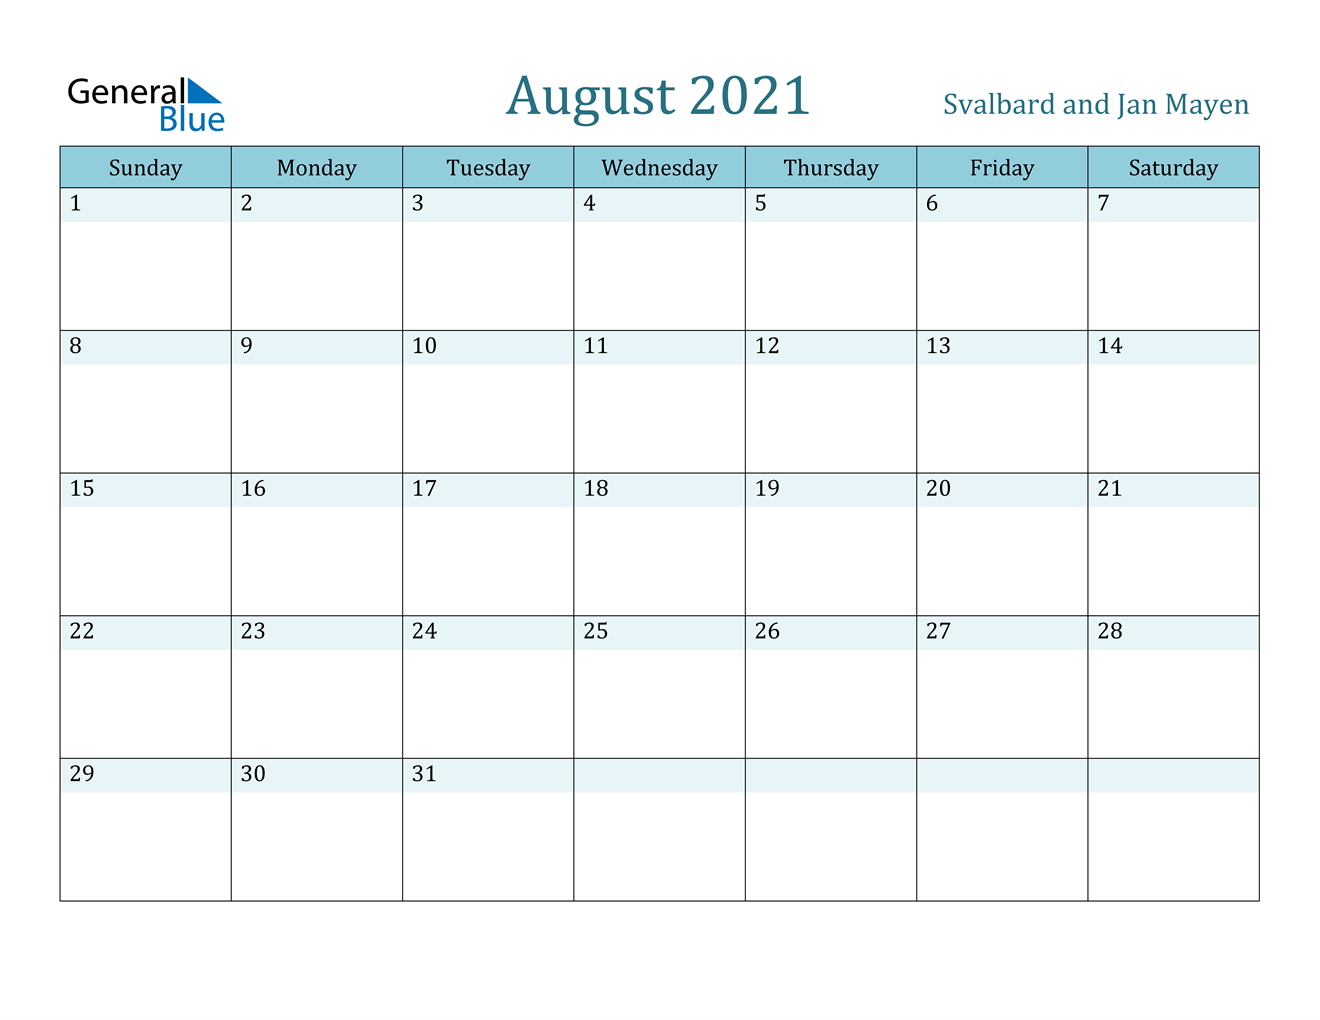 August 2021 Calendar - Svalbard And Jan Mayen